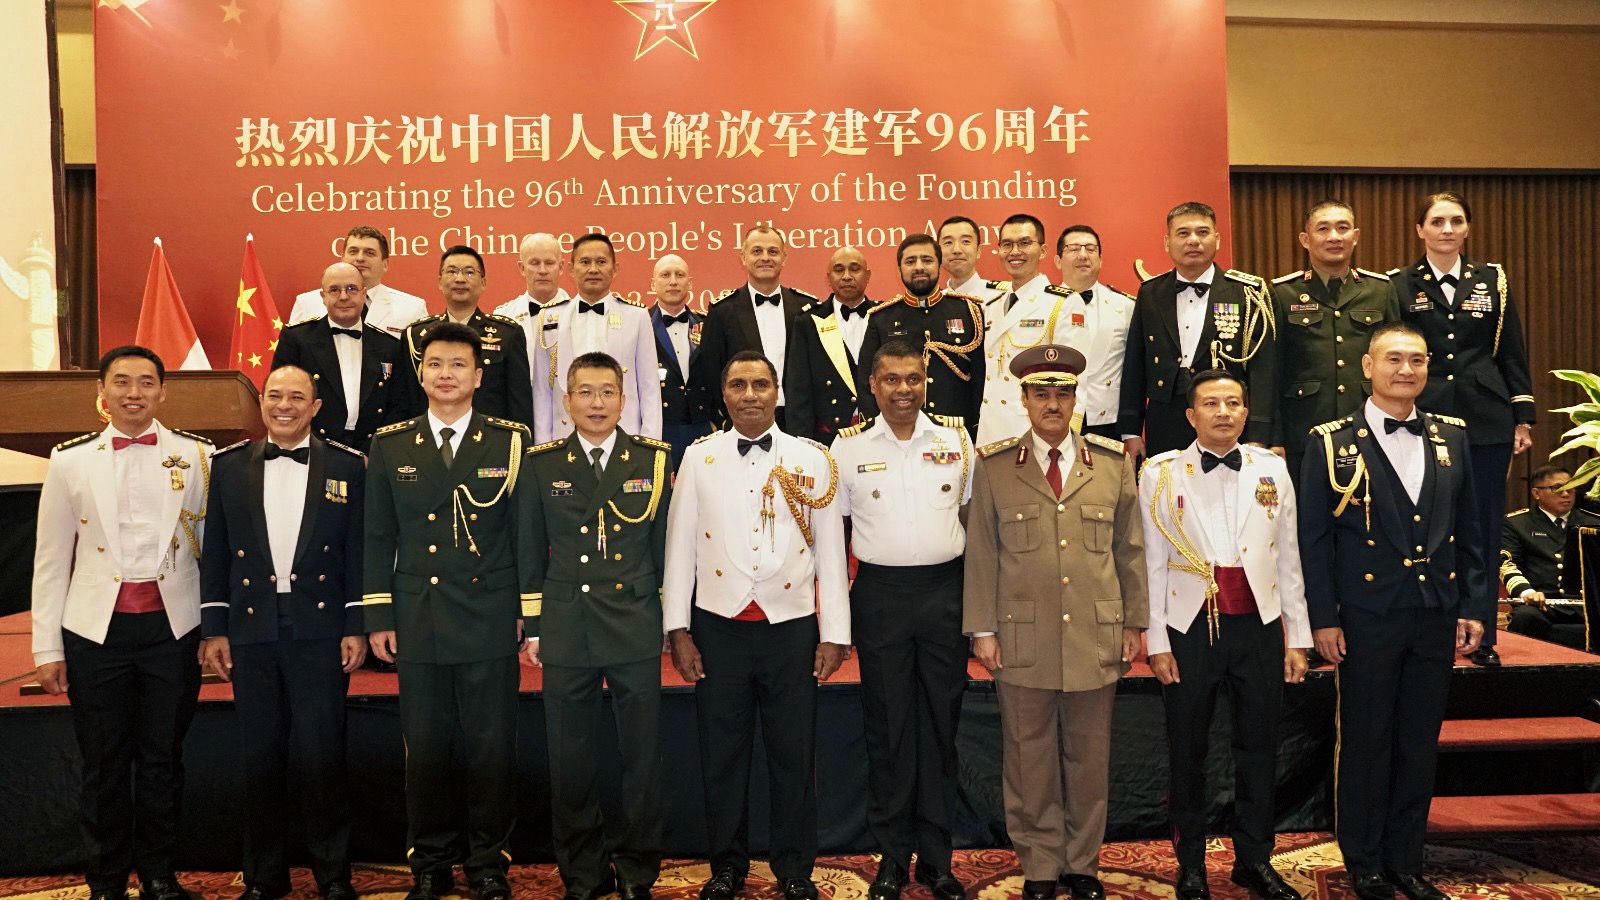 HUT ke-96 Militer China, Tegaskan Bangun Perdamaian Dunia-Image-1